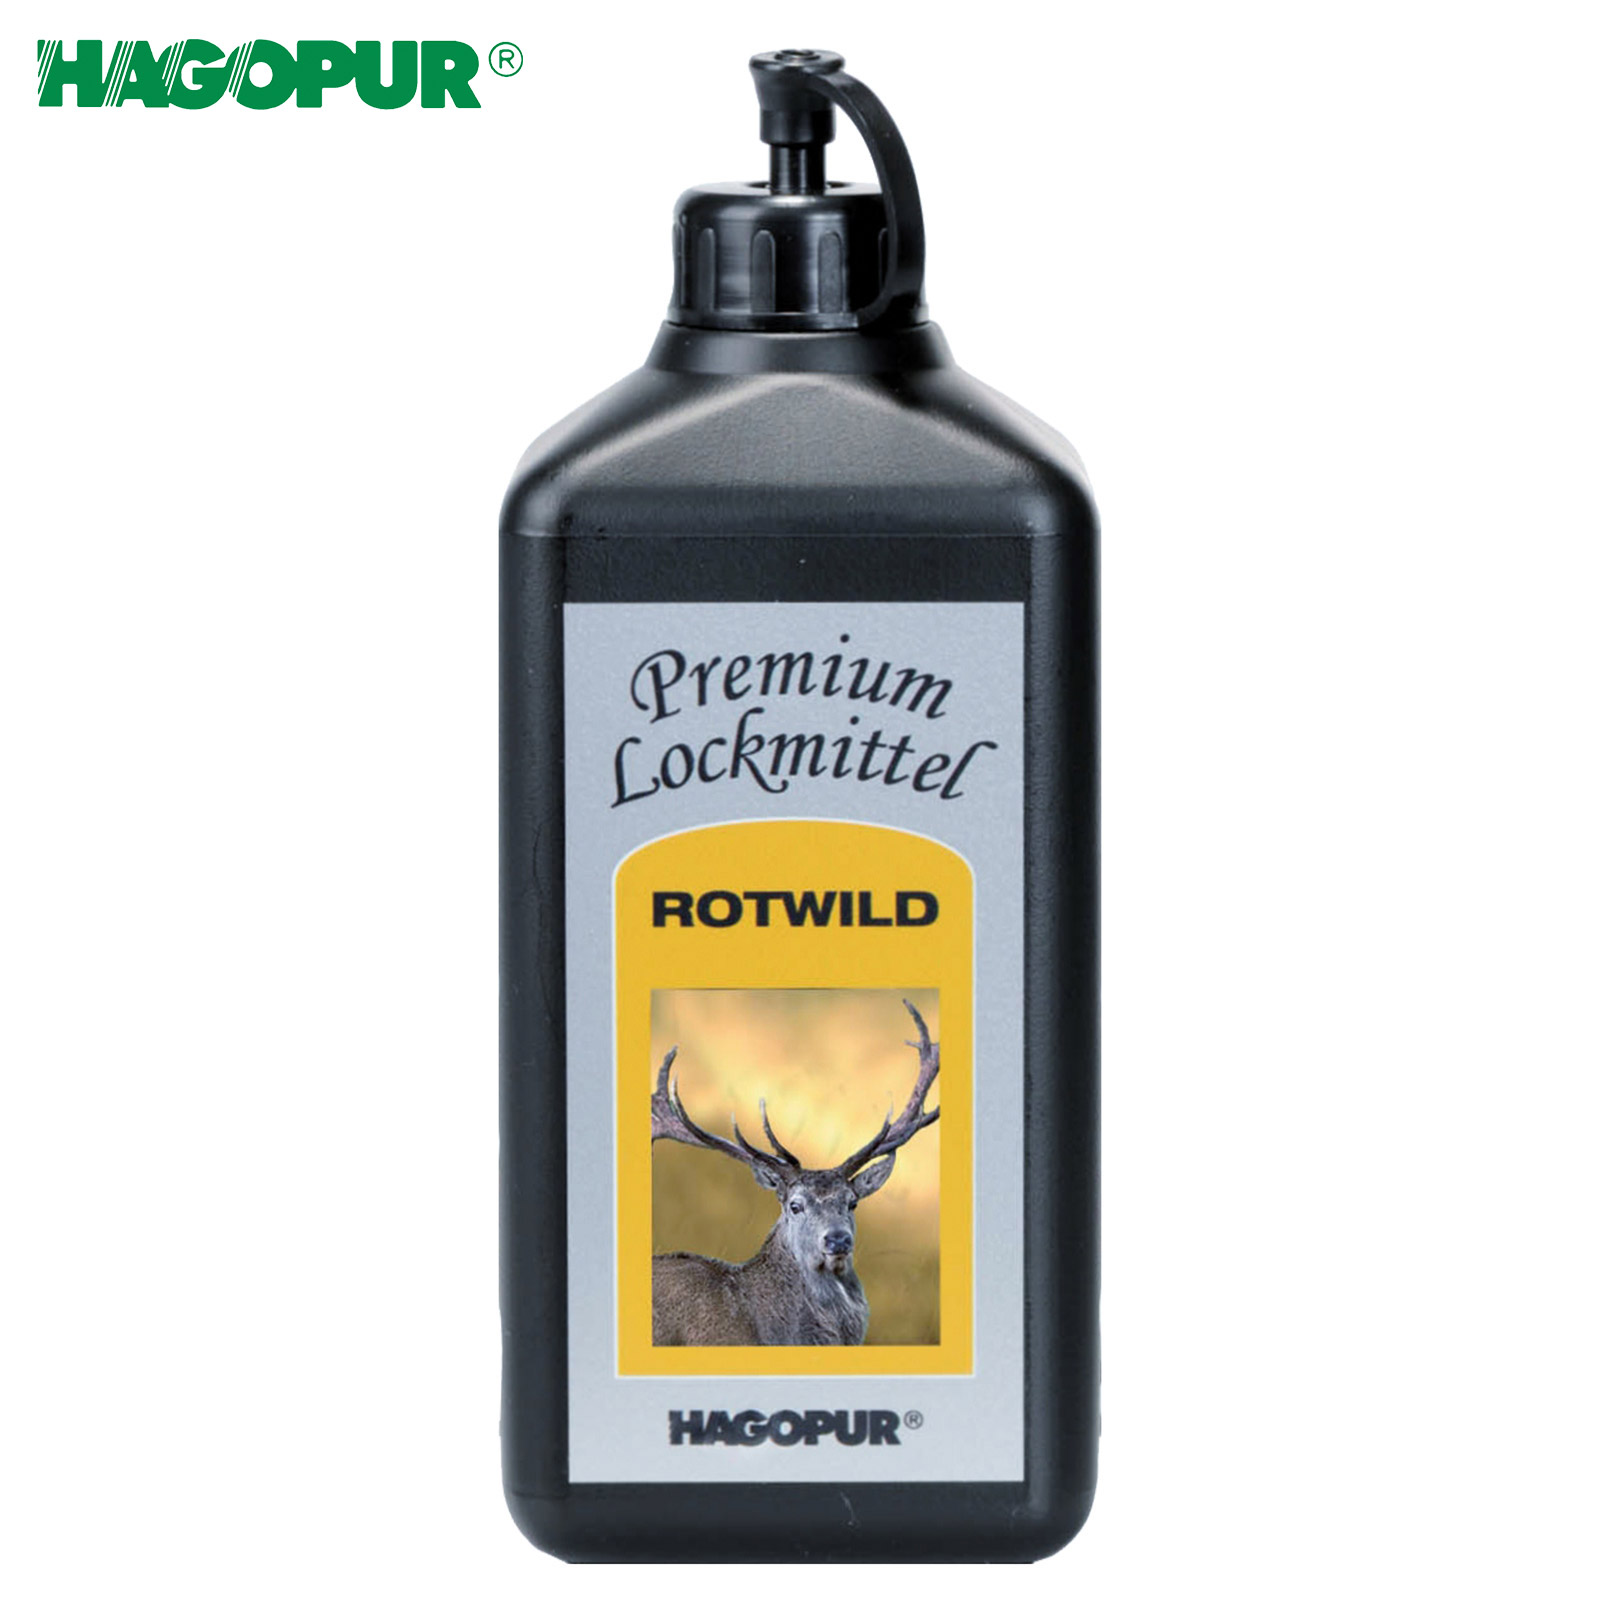 HAGOPUR Premium Lockmittel Rotwild